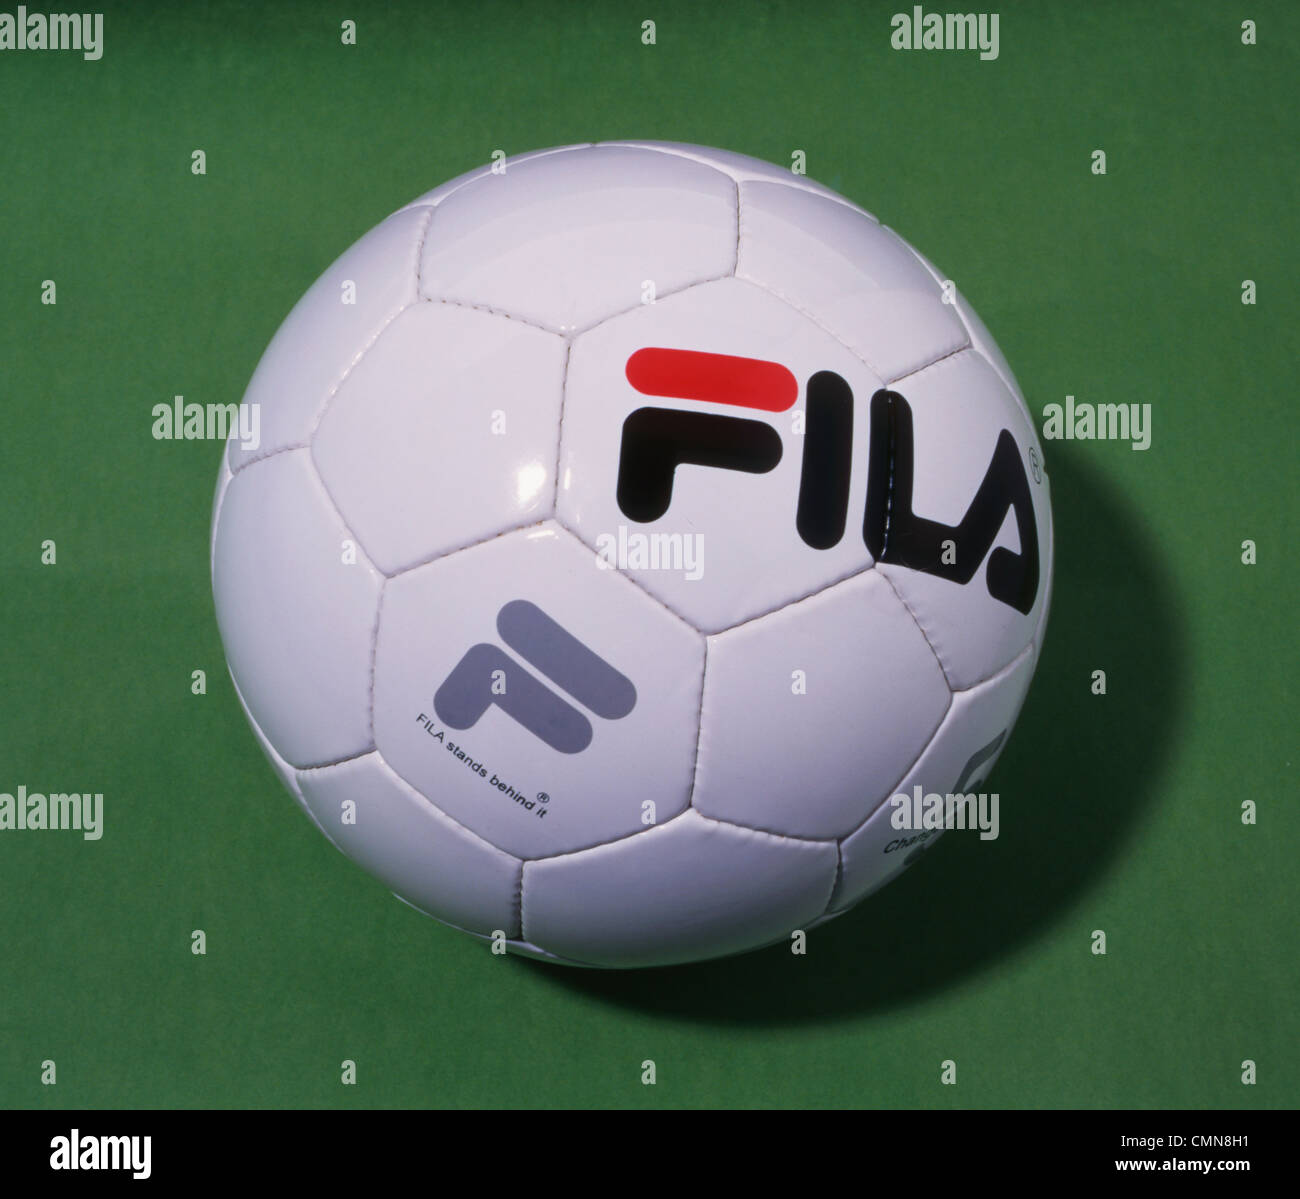 stitched Fila football Stock Photo - Alamy